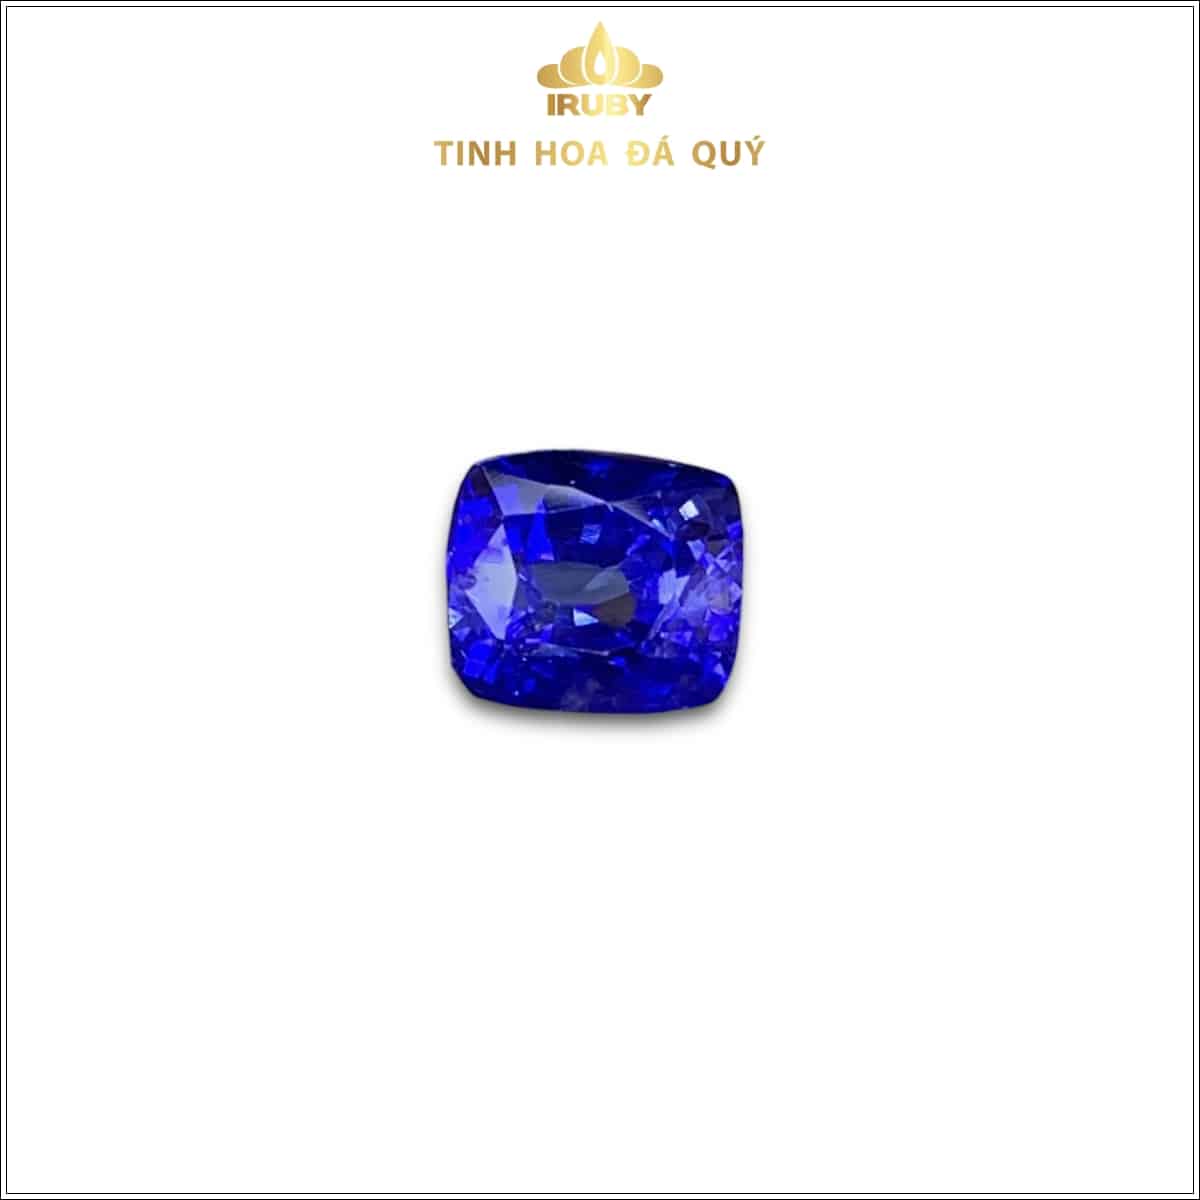 Viên Sapphire màu xanh lam hoàng gia 2,73ct - IRSP 236273